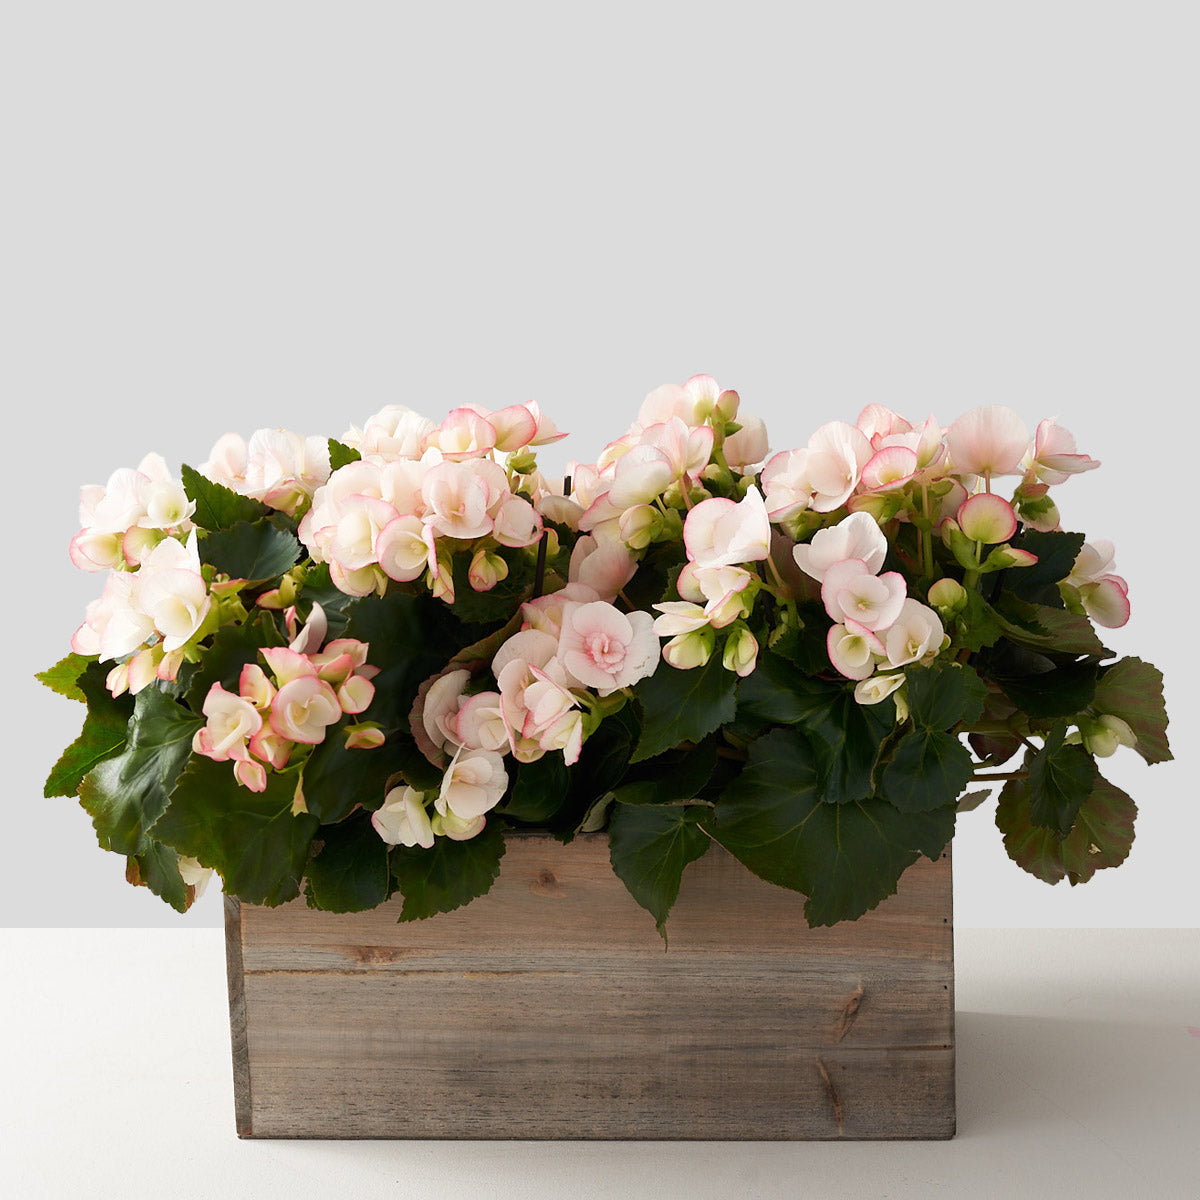 Blush Begonia in Wooden Box